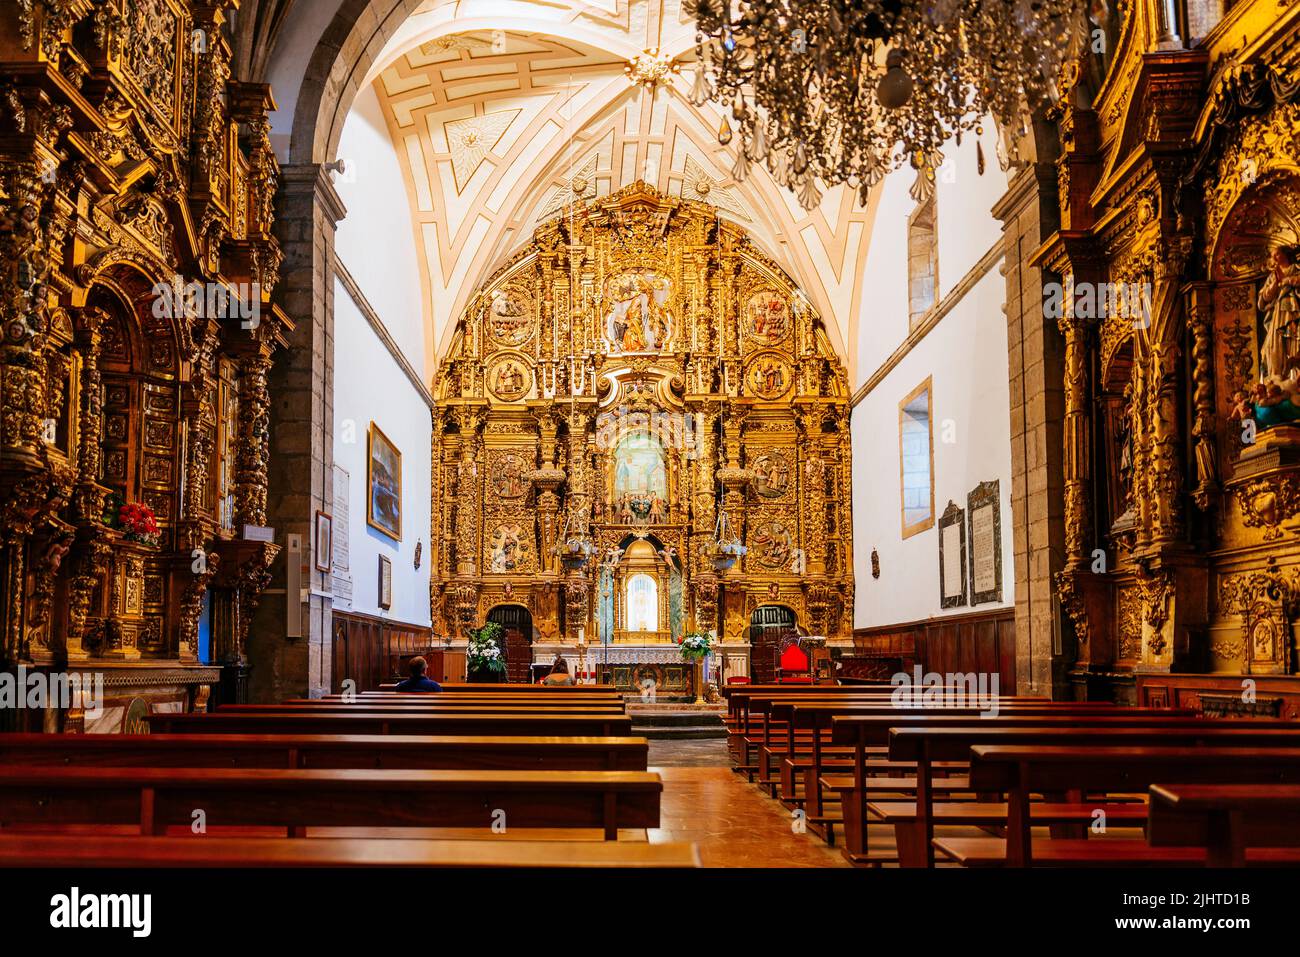 Nave y retablo, iglesia de Santa María. Luanco, Gozón, Principado de Asturias, España, Europa Foto de stock